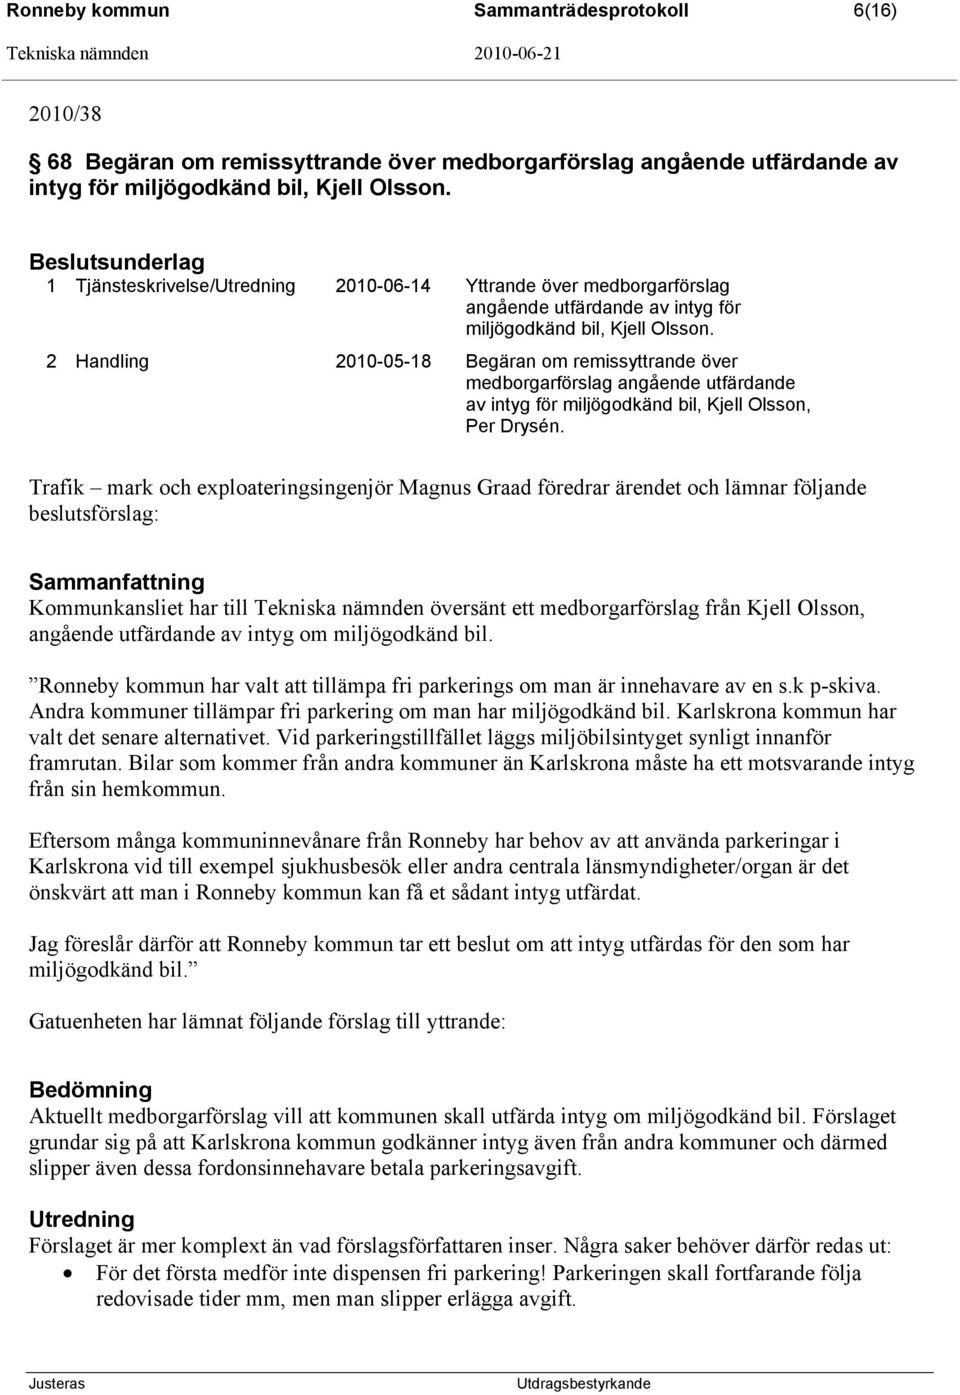 2 Handling 2010-05-18 Begäran om remissyttrande över medborgarförslag angående utfärdande av intyg för miljögodkänd bil, Kjell Olsson, Per Drysén.